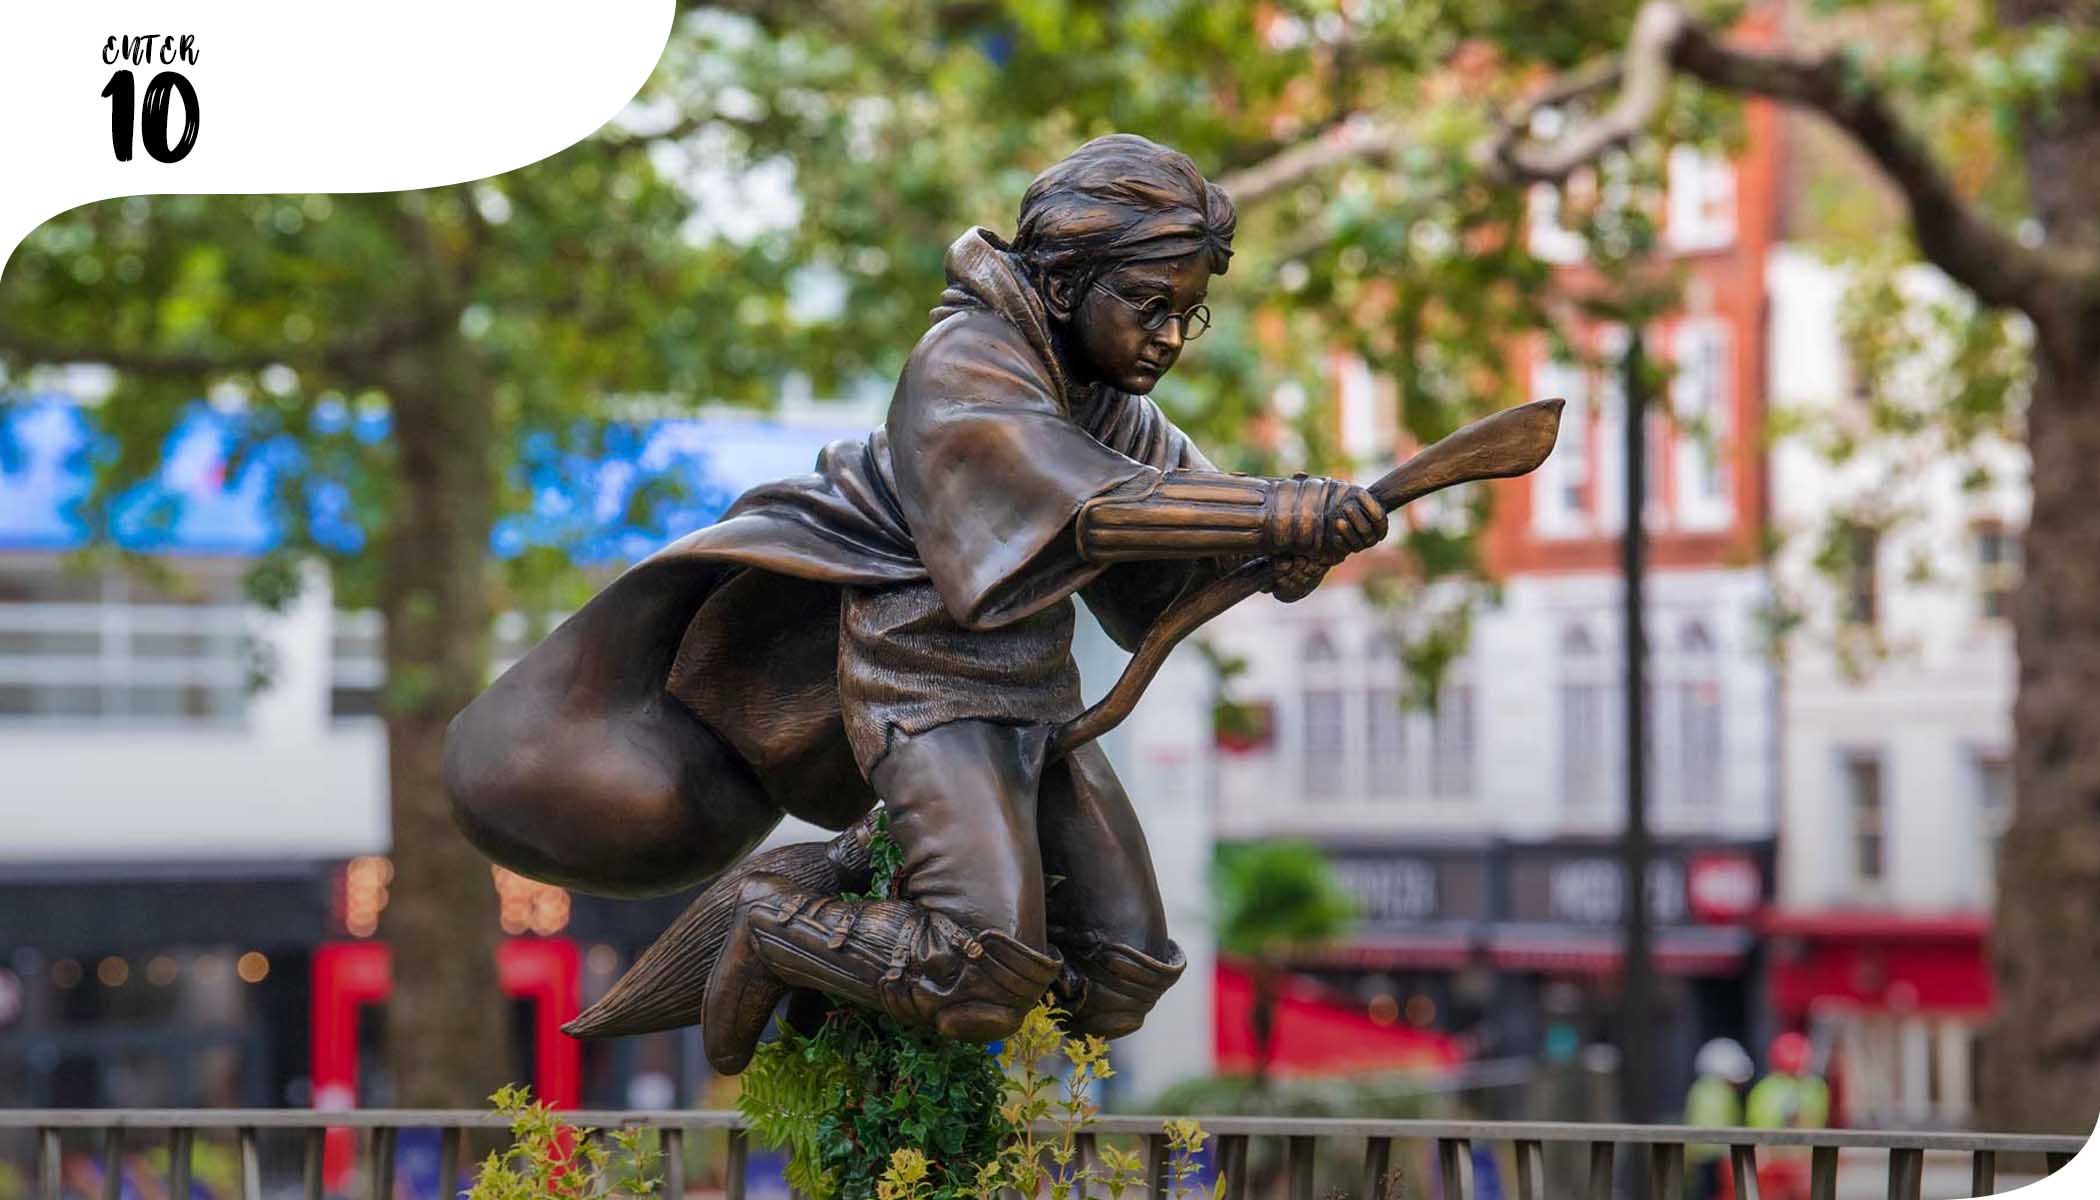 Статуя Гарри Поттера, играющего в квиддич, появилась на Лондонской аллее